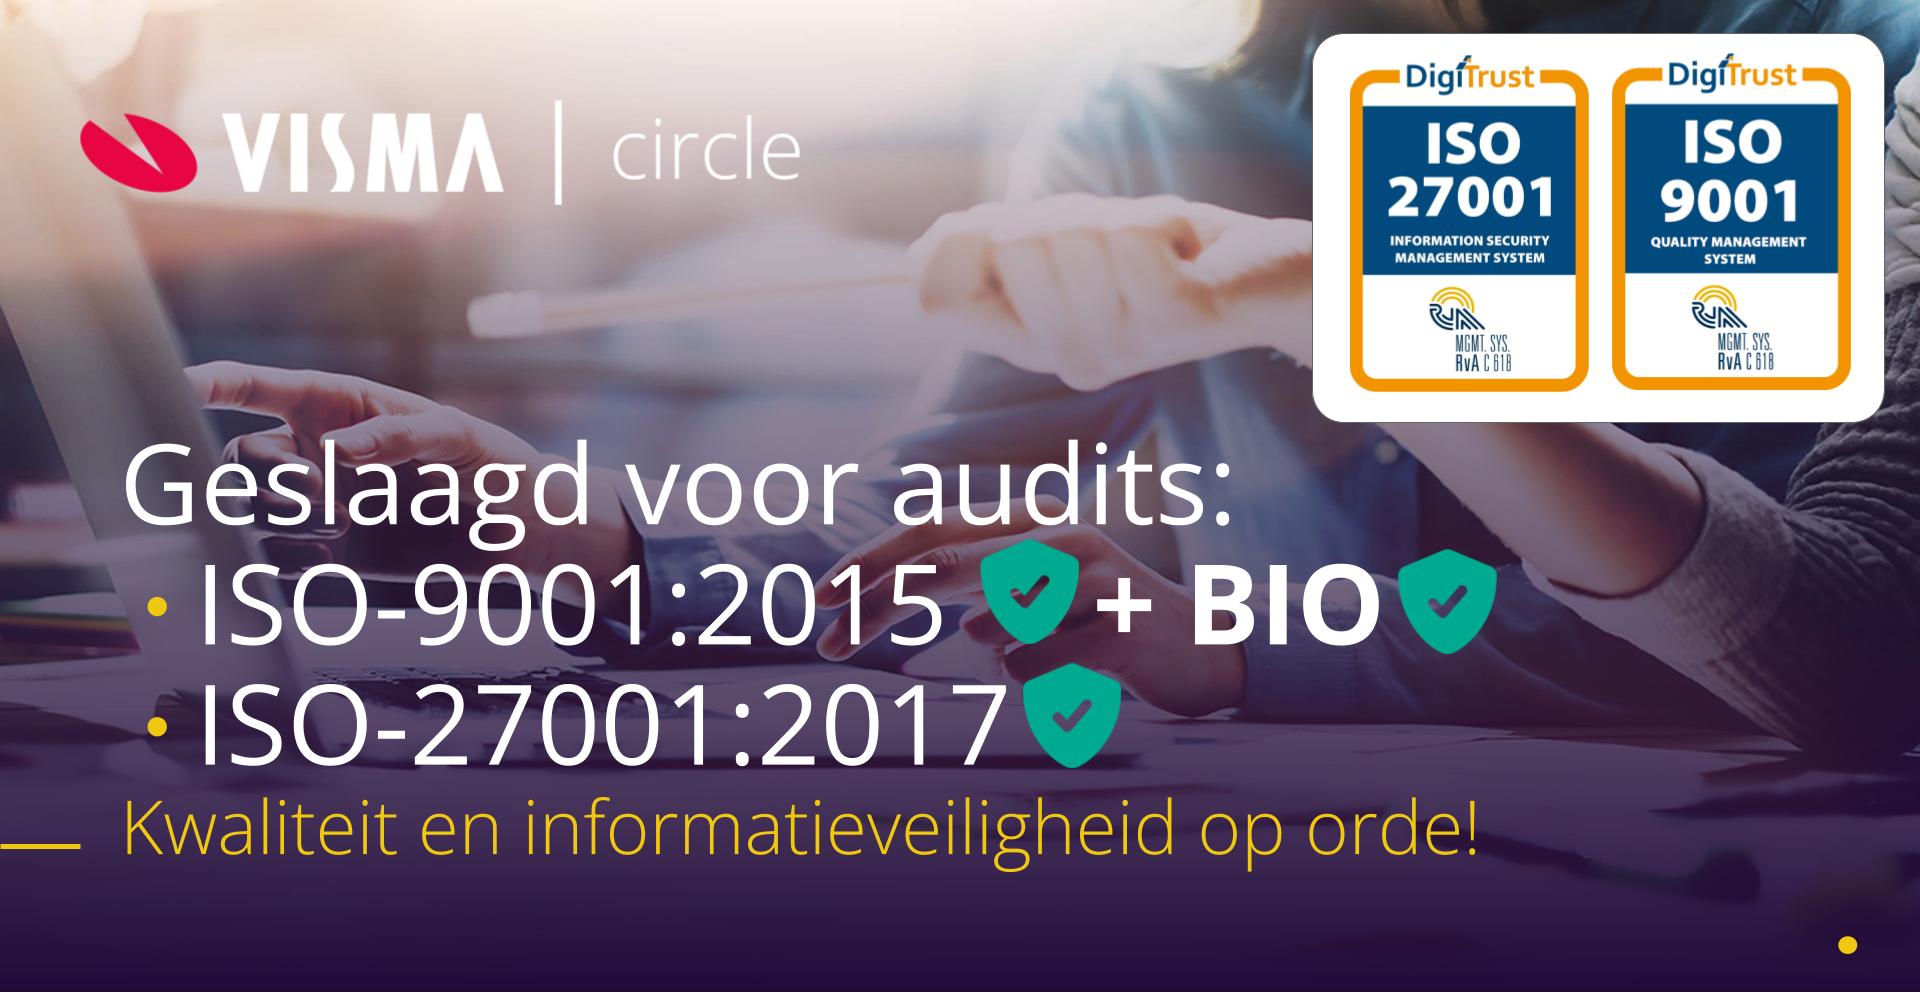 Visma Circle doorstaat ISO/IEC-audits met glans!